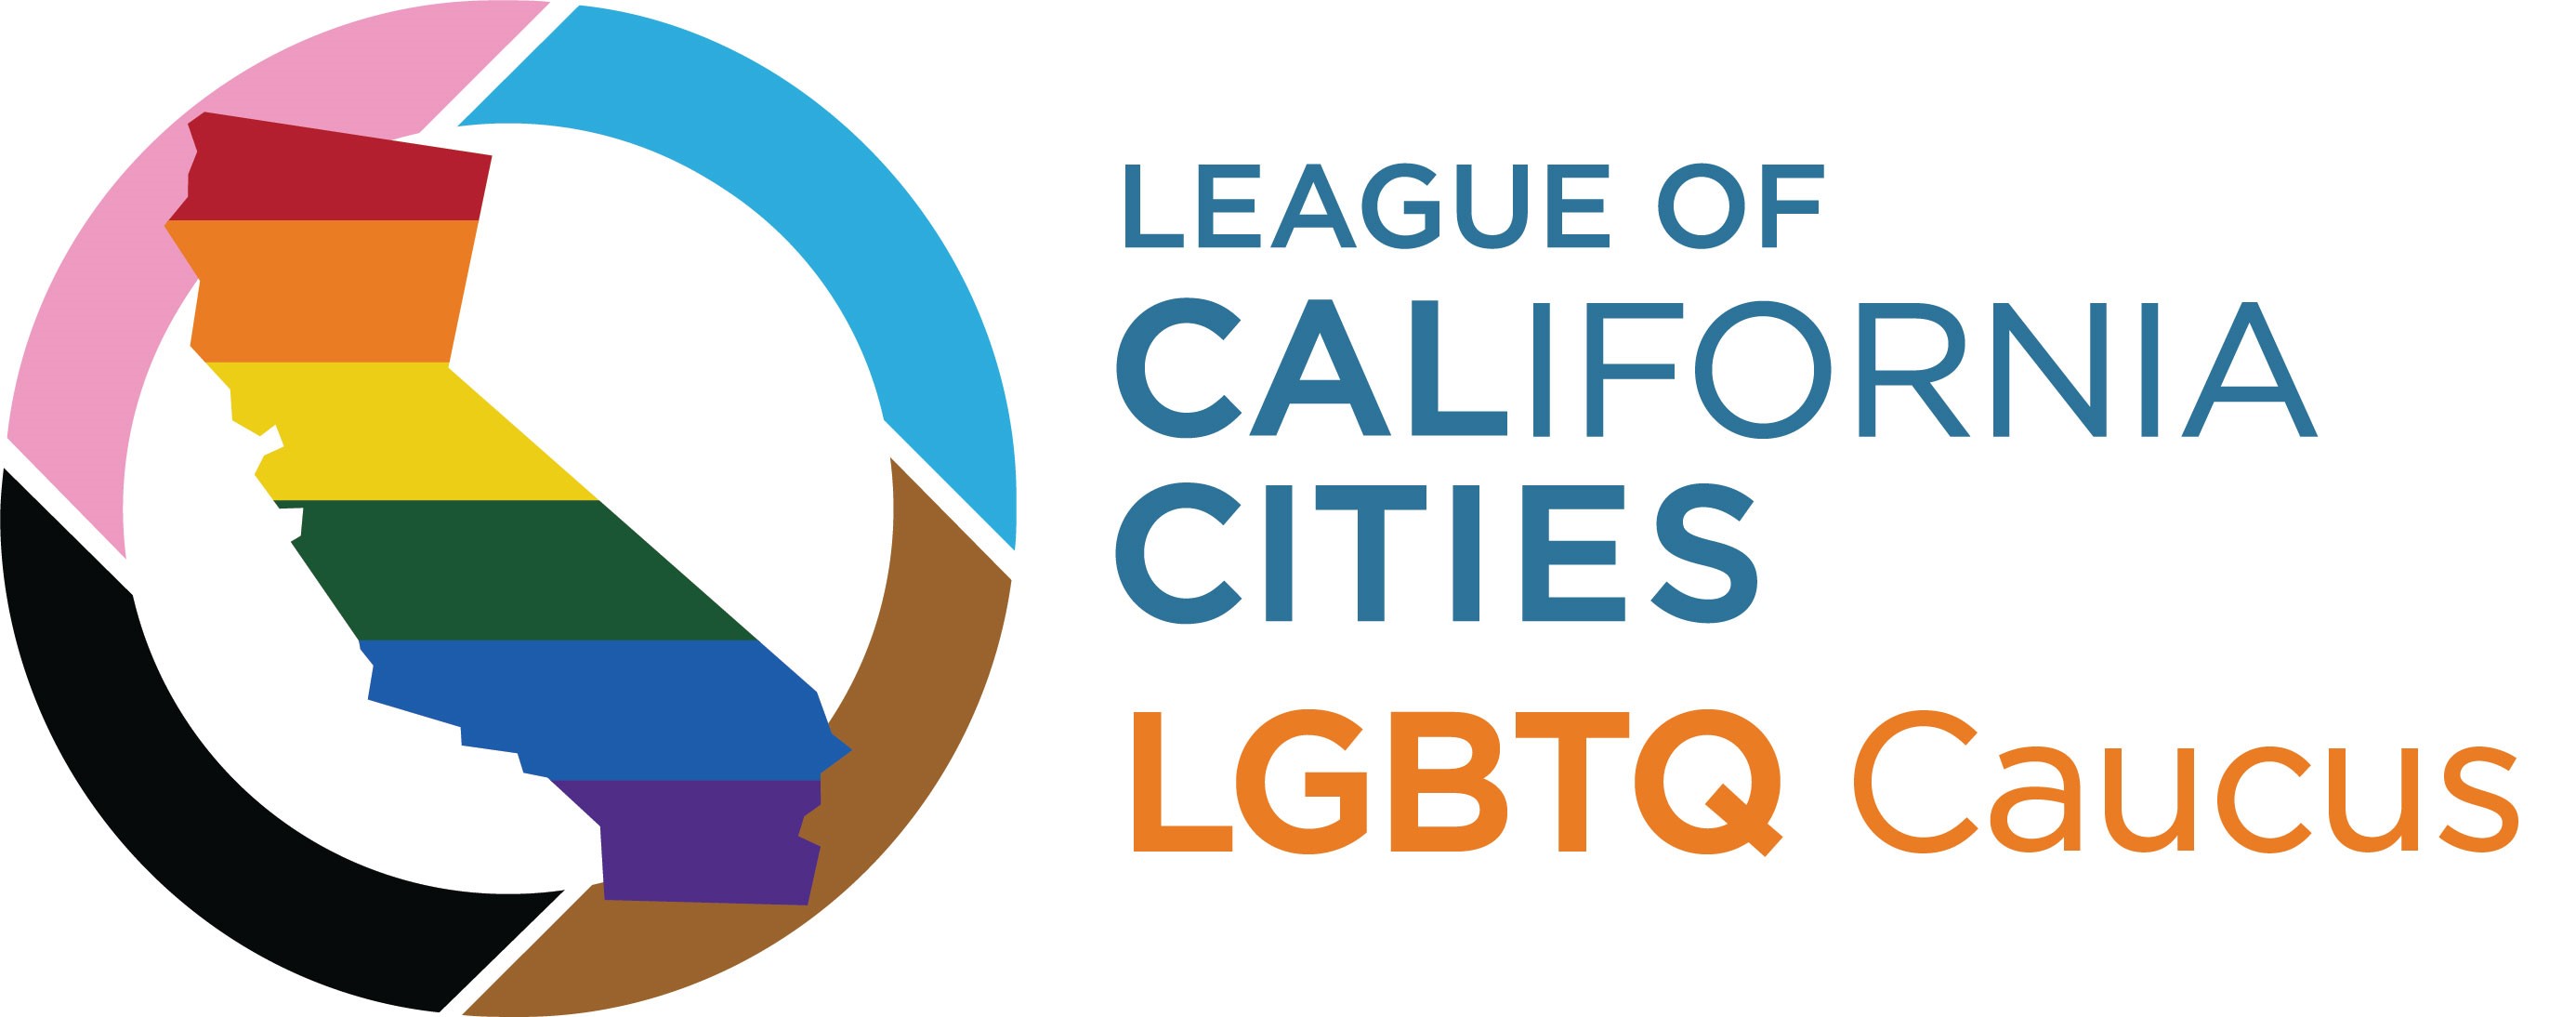 LGBTQ Caucus full logo